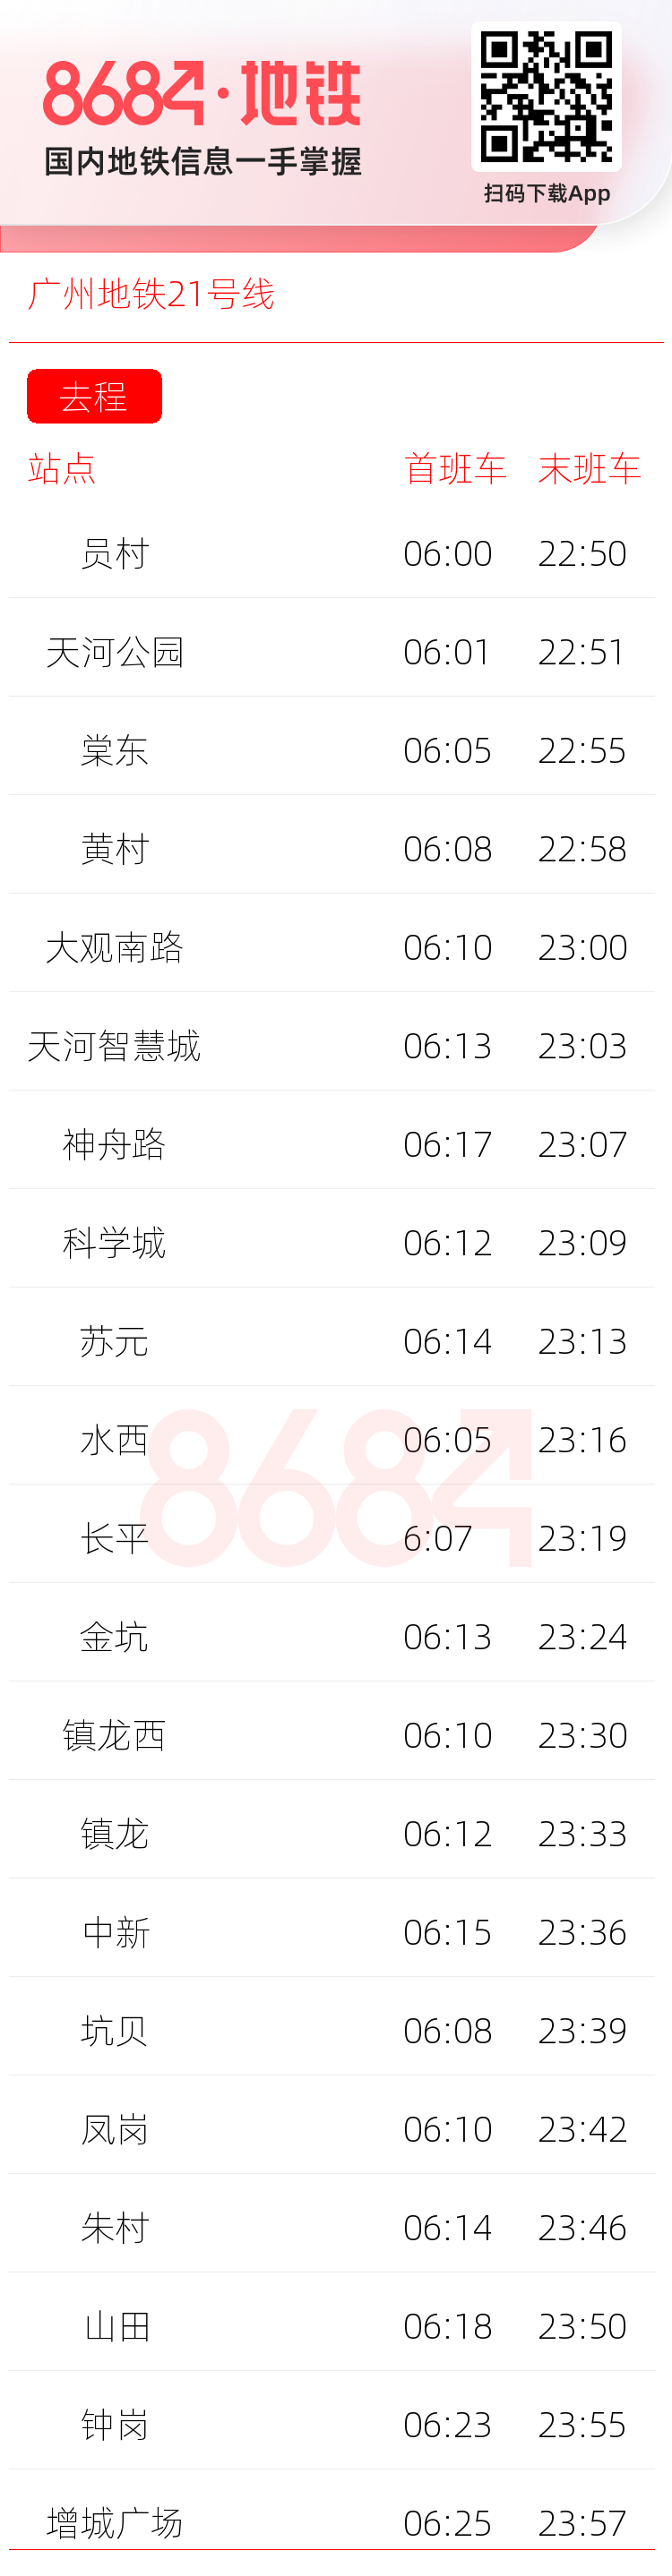 广州地铁21号线运营时间表